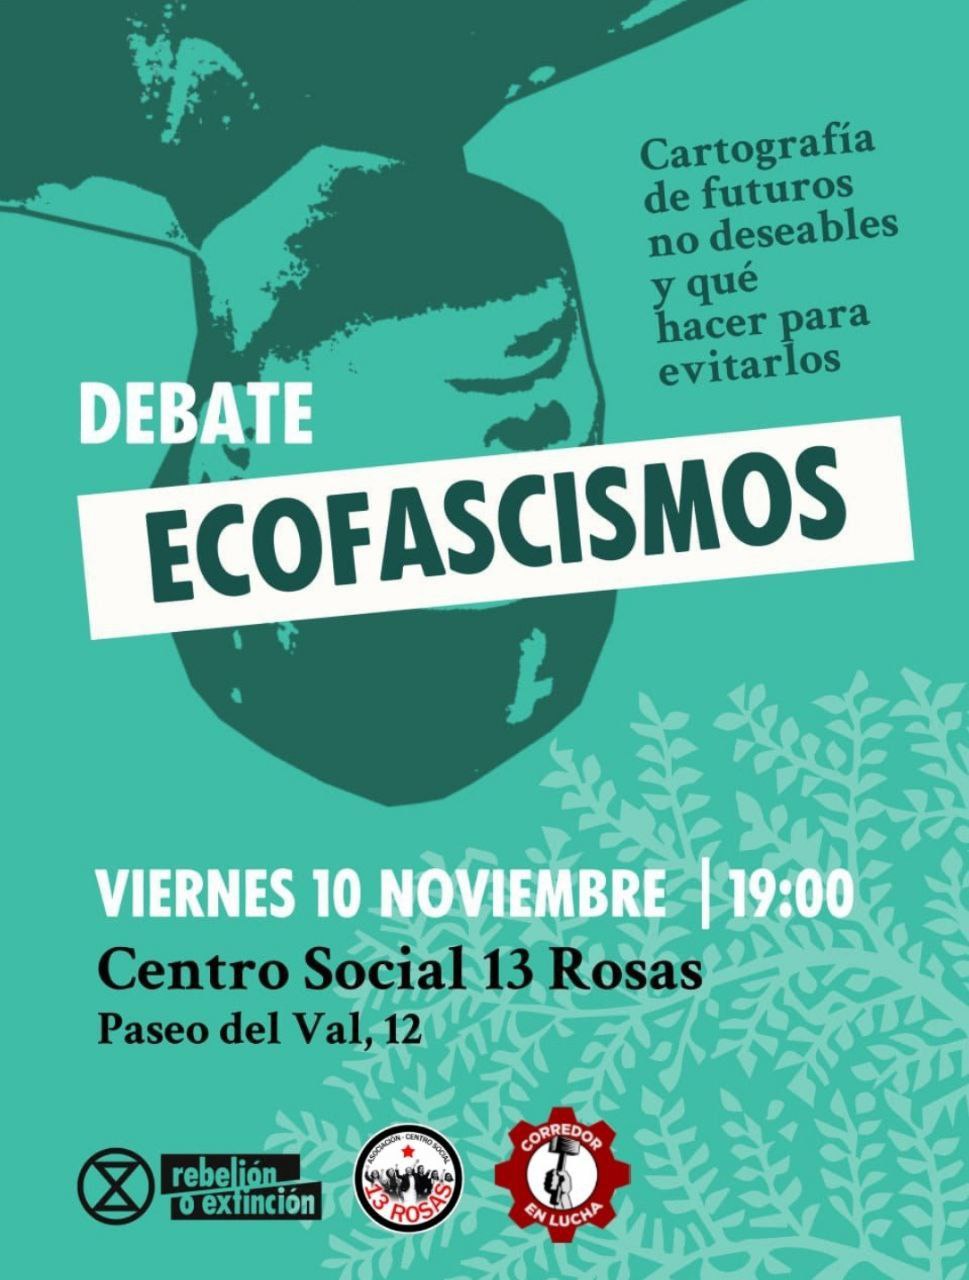 Debate Ecofascismos Viernes 10 Noviembre 19:00 Centro Social 13 Rosas, Paseo del Val, 12